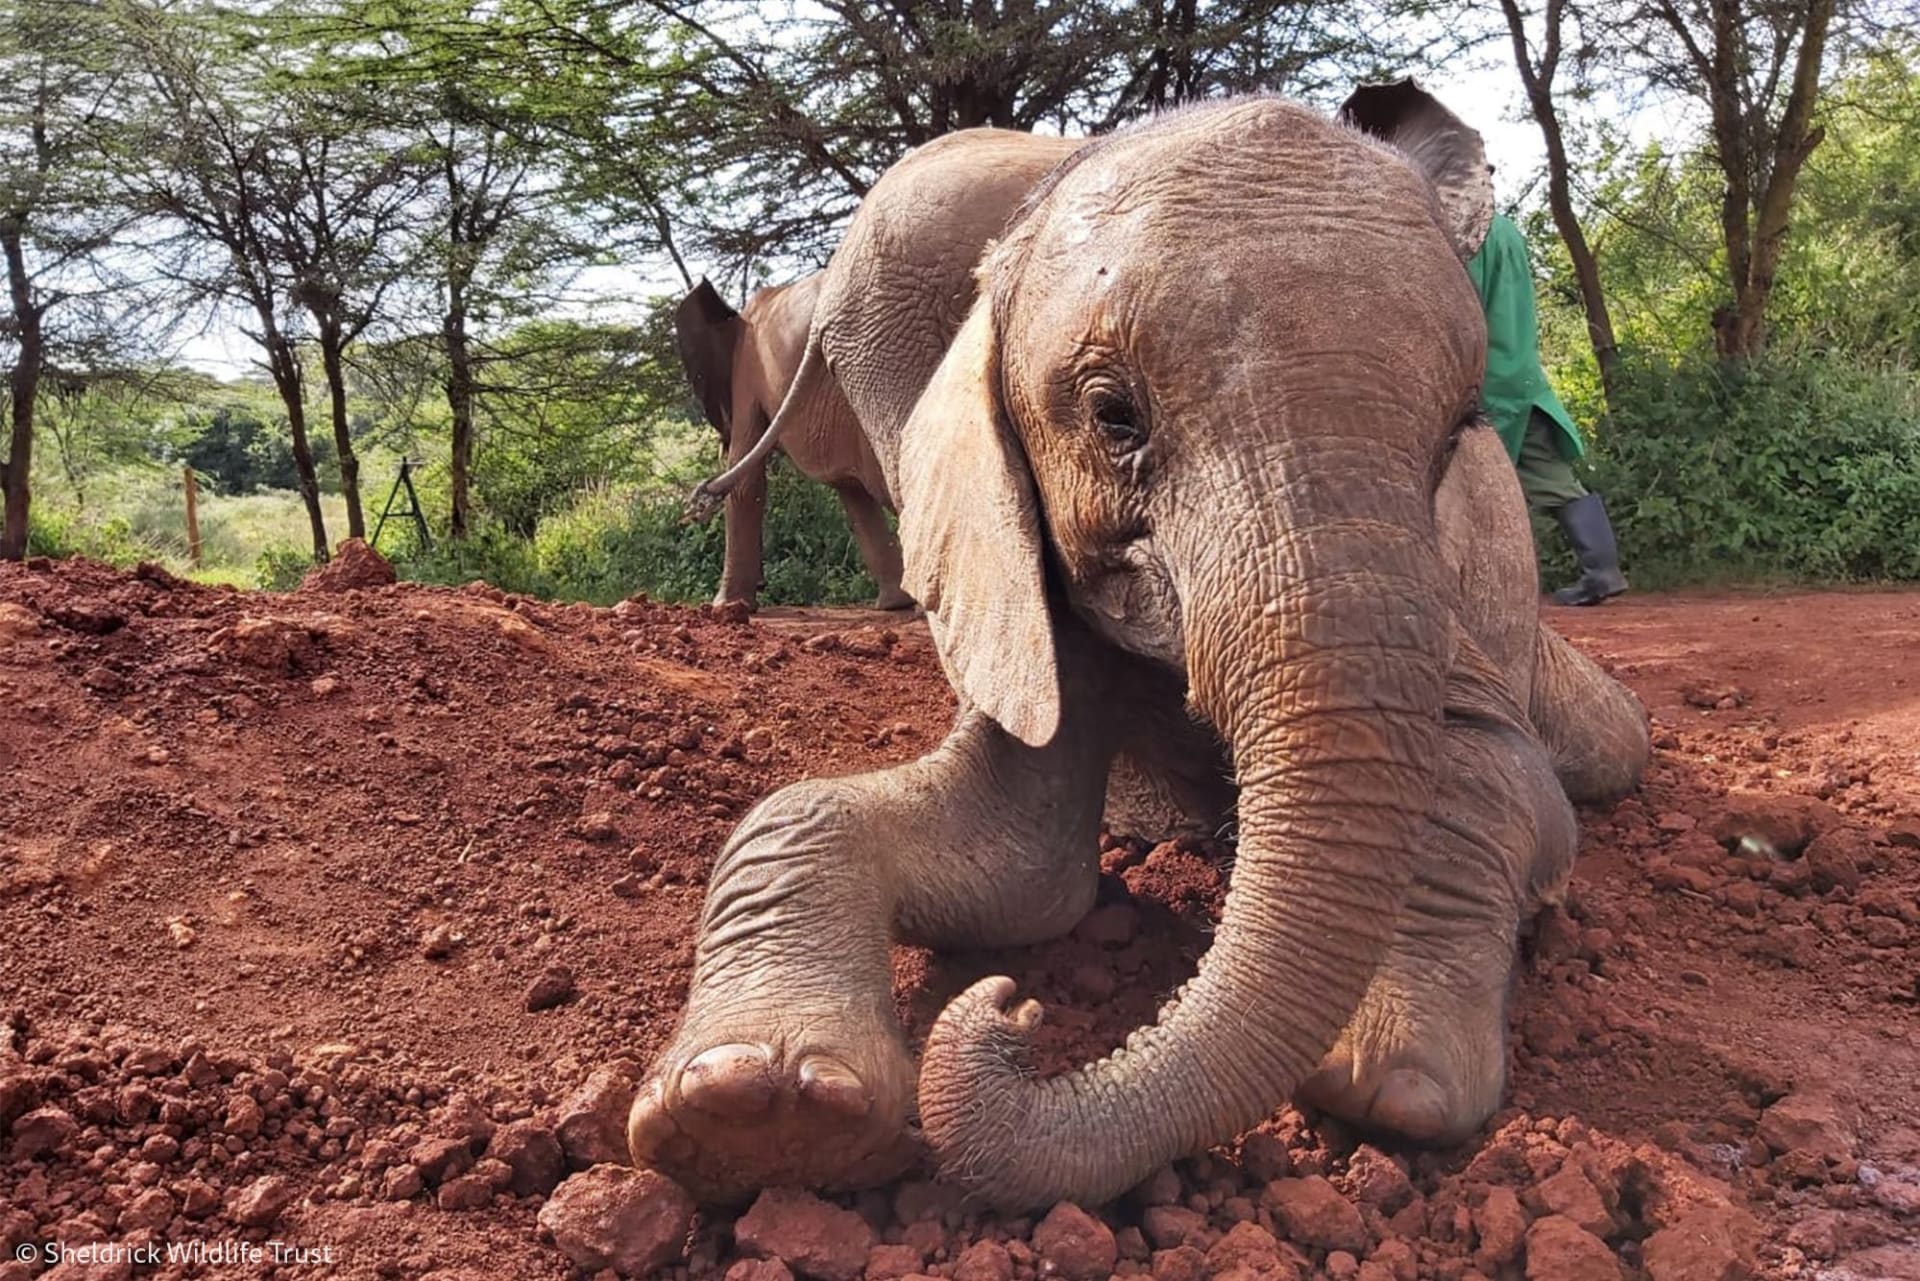 Díky spolupráci dvou nadací a keňské správy parků se třináctičlenné sloní stádo bude moci vrátit do přírody.